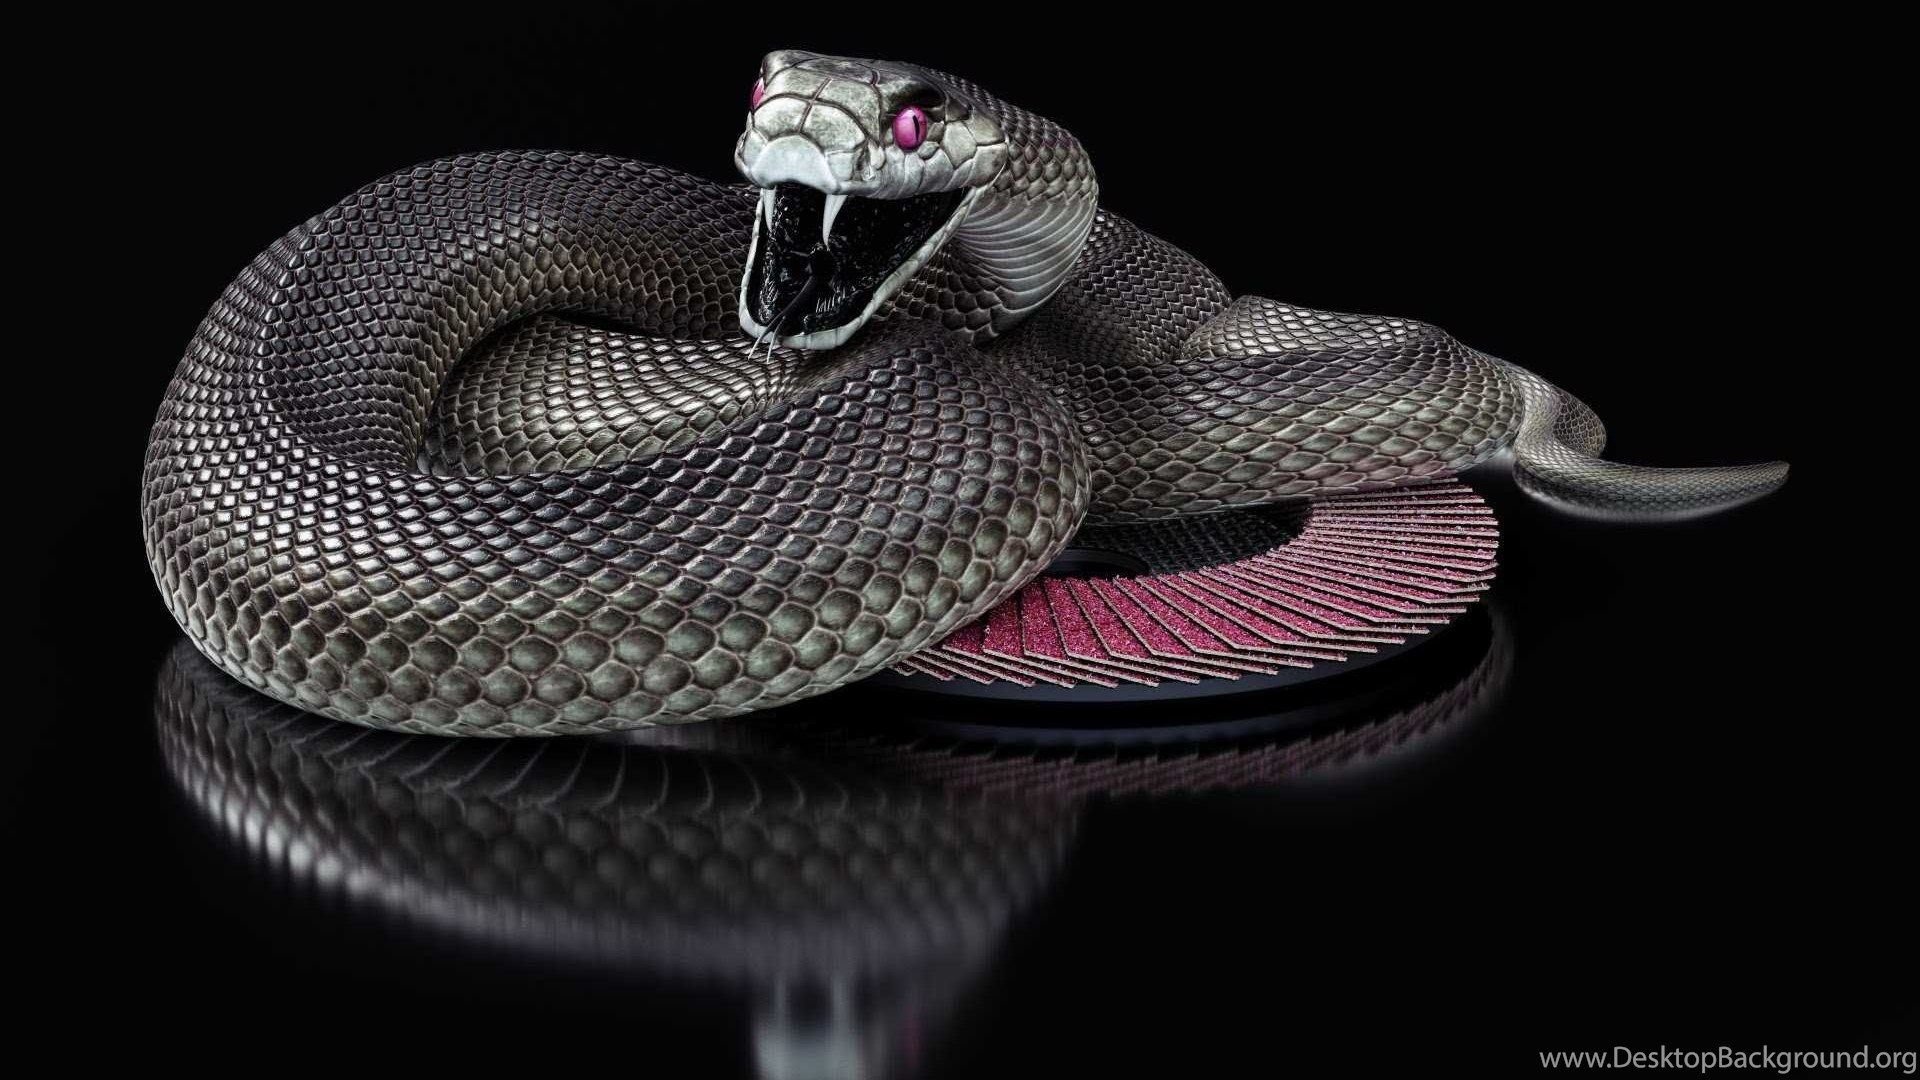 Гибриды змей